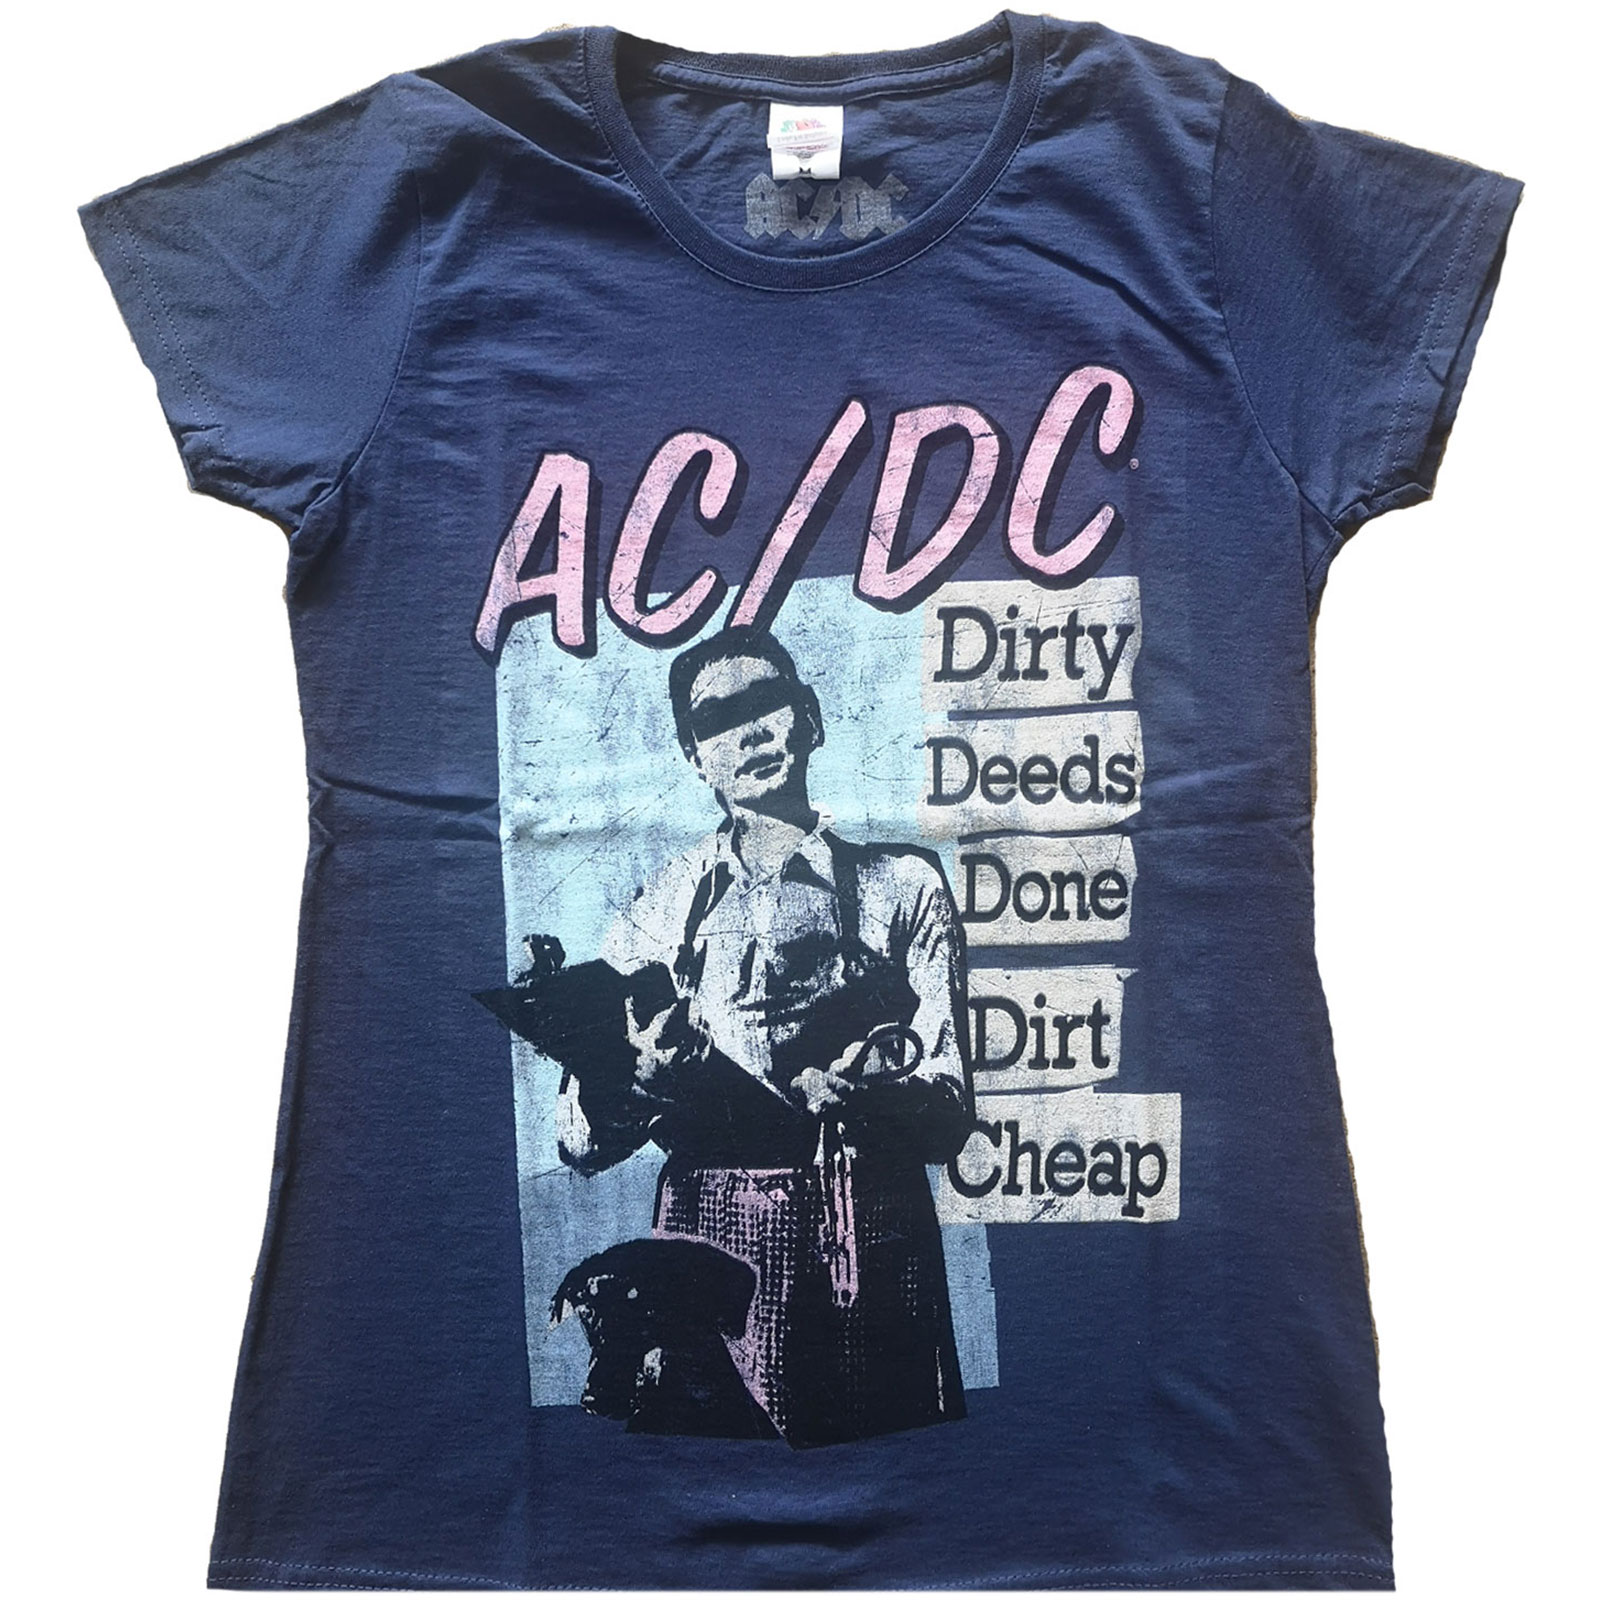 Dámske tričko AC/DC - DDDDC